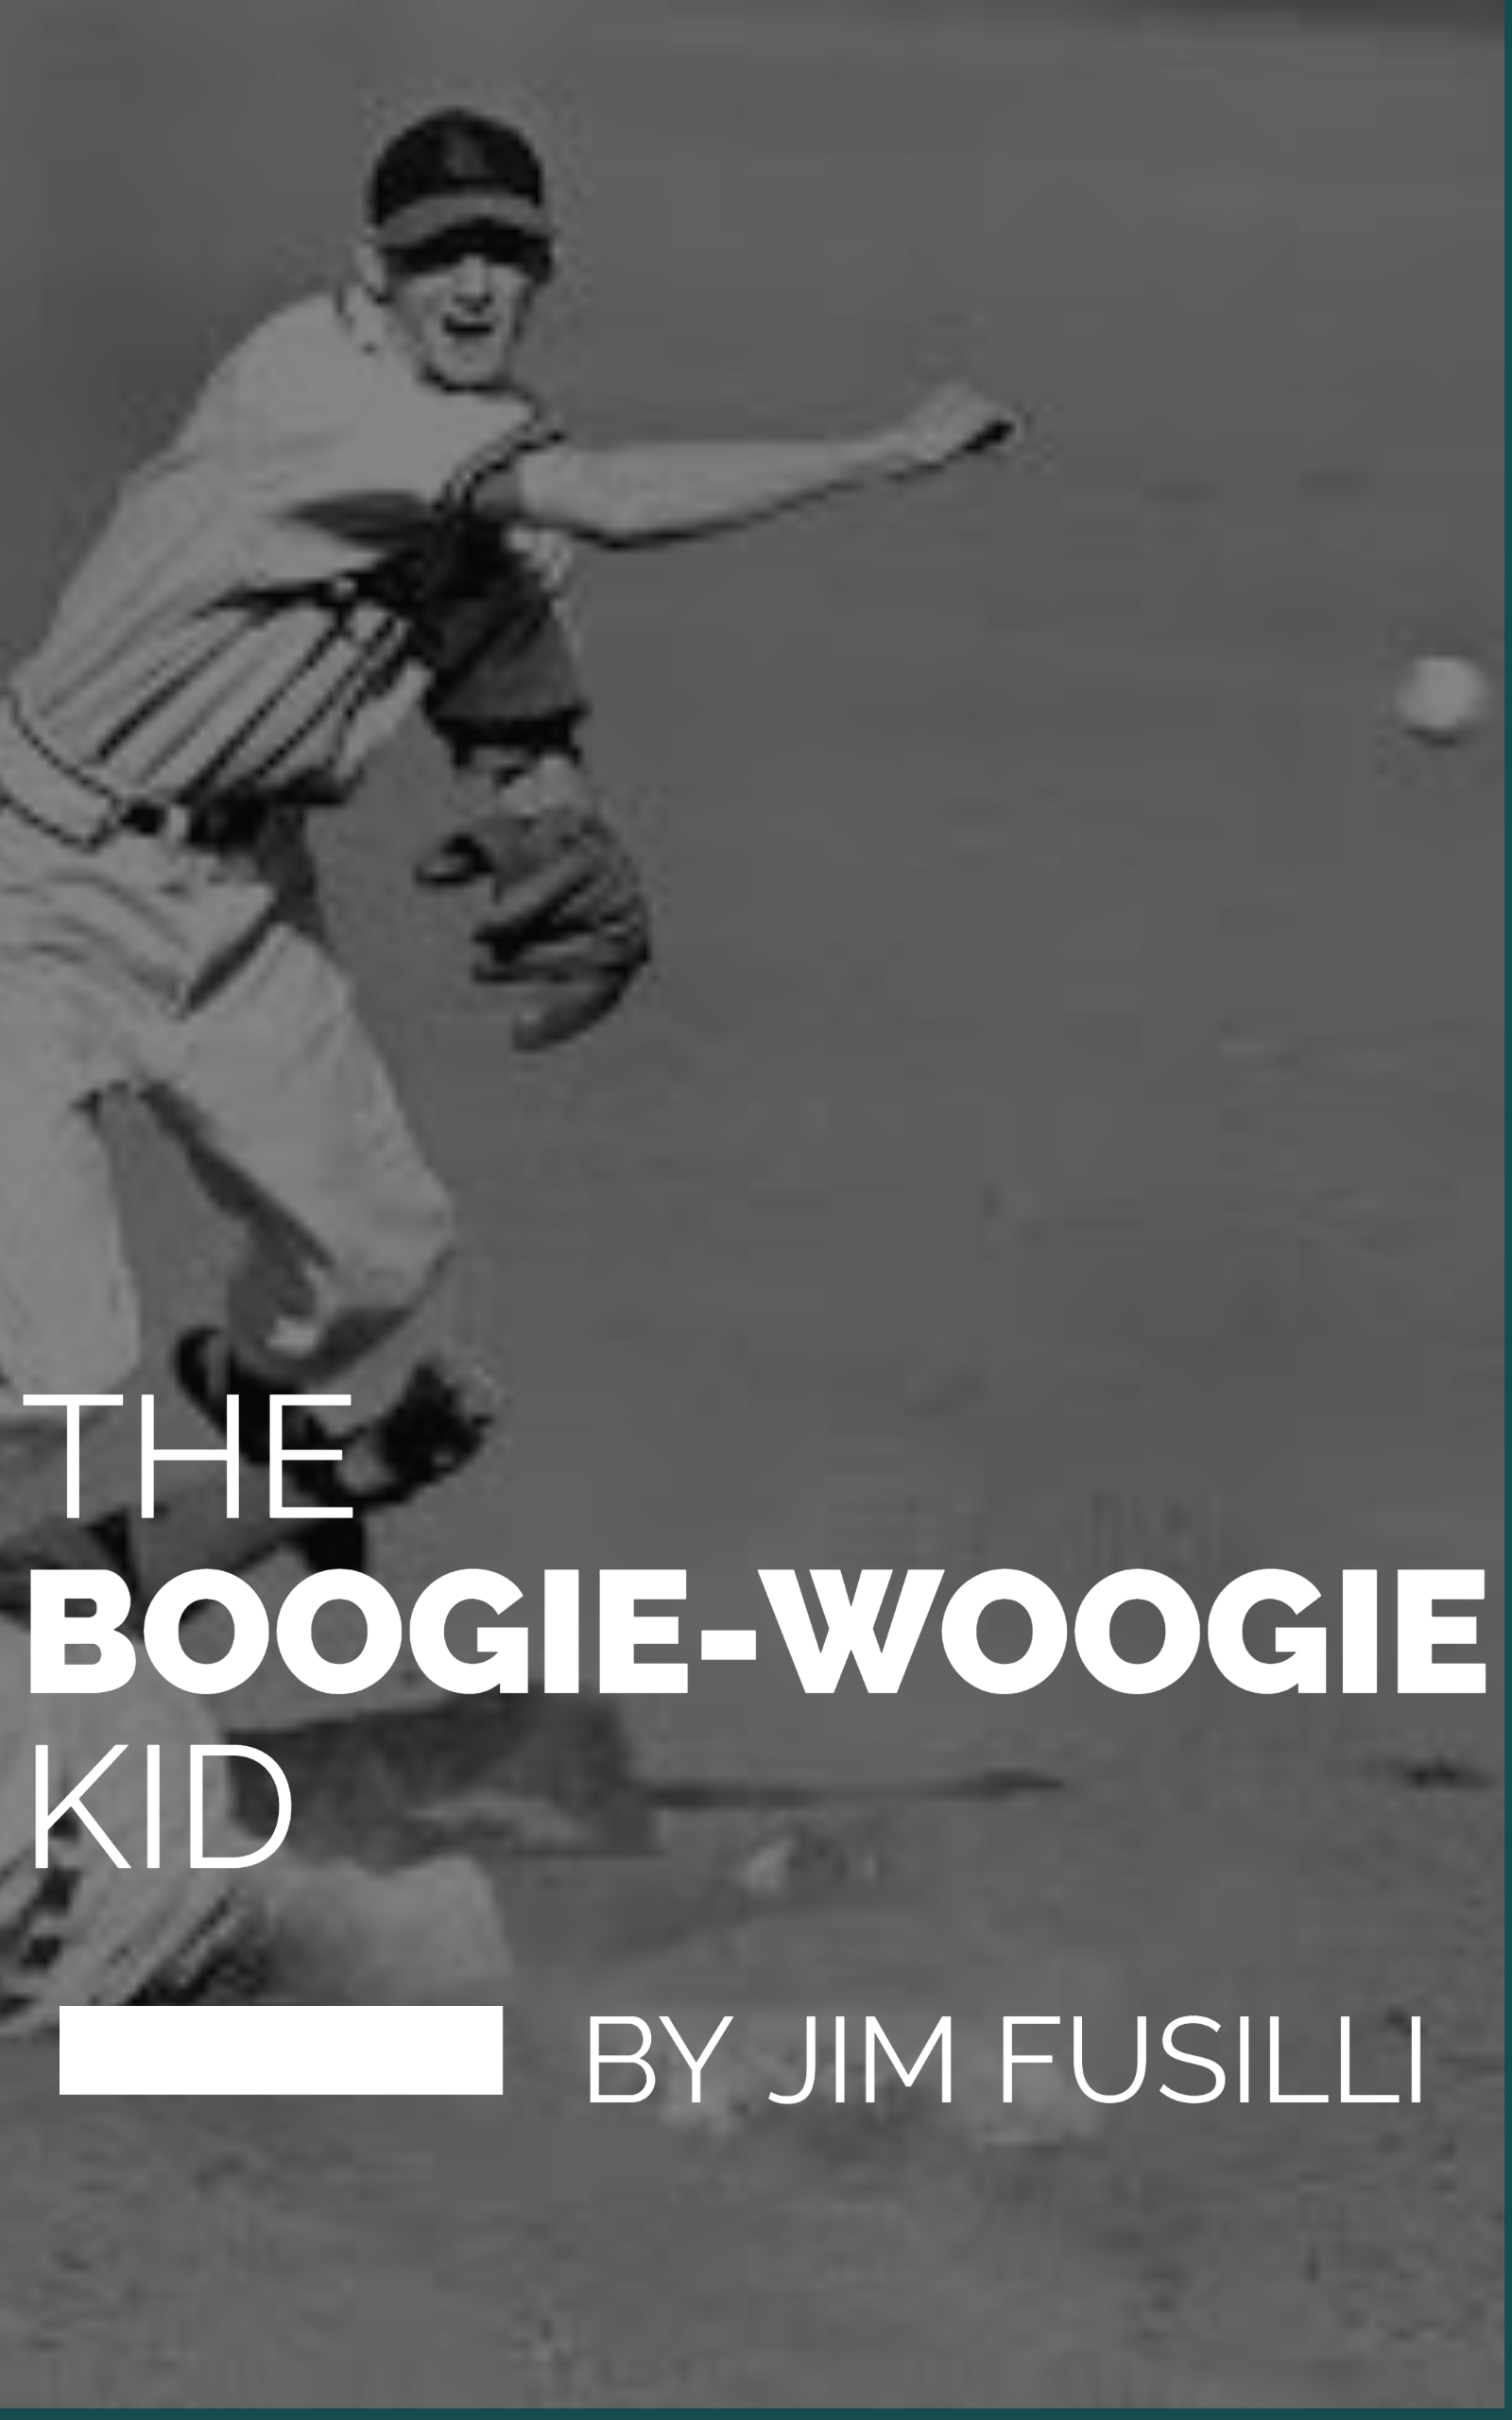 The Boogie-Woogie Kid